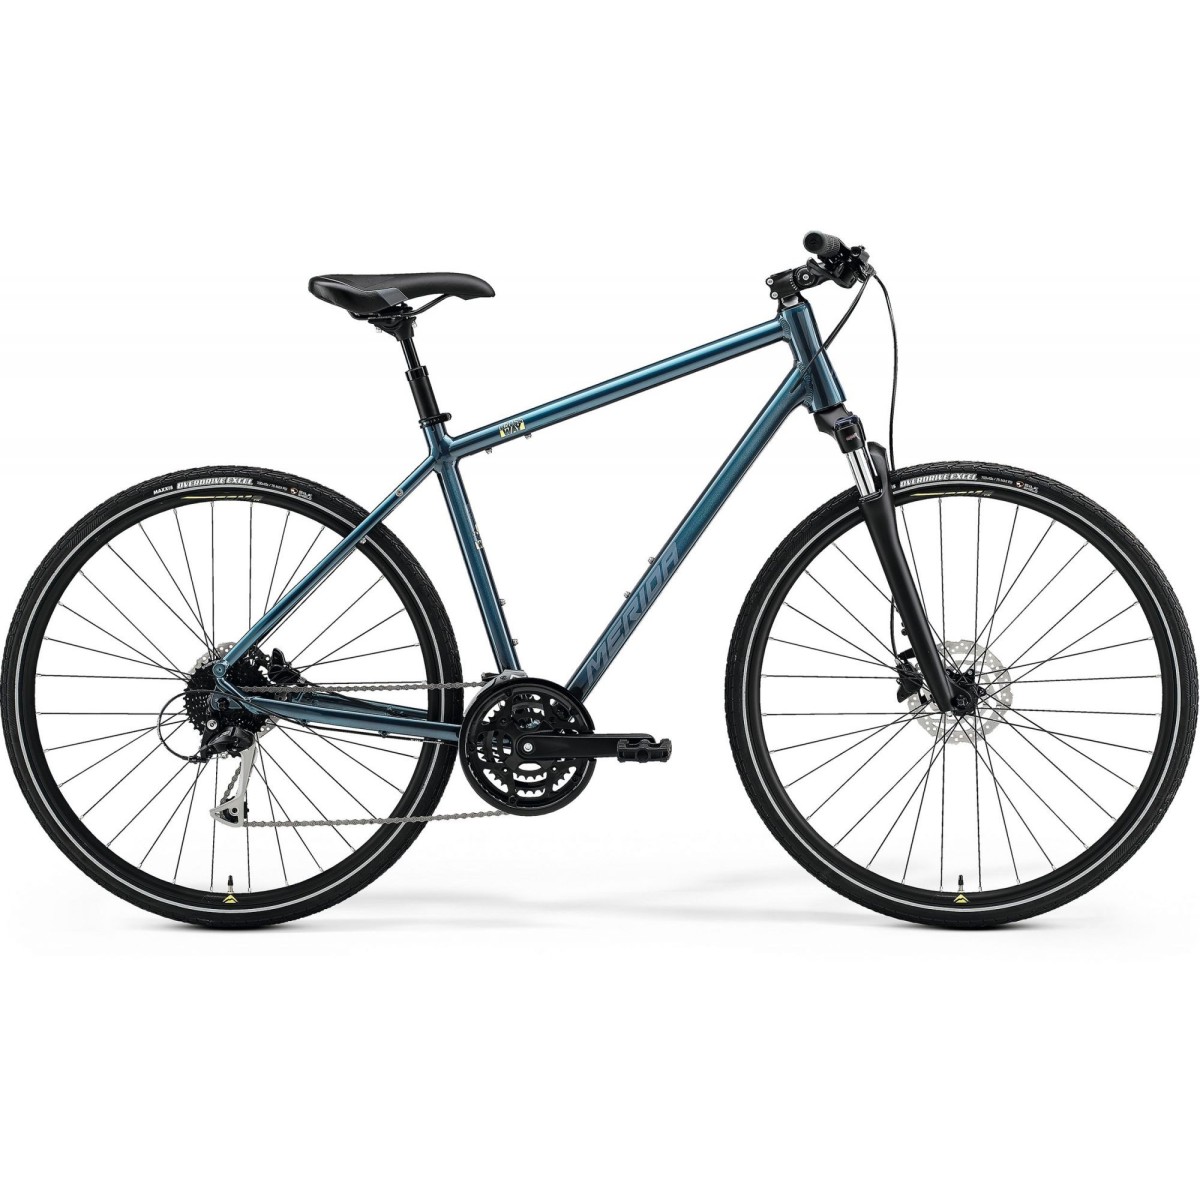 MERIDA CROSSWAY 100 bicycle - blue